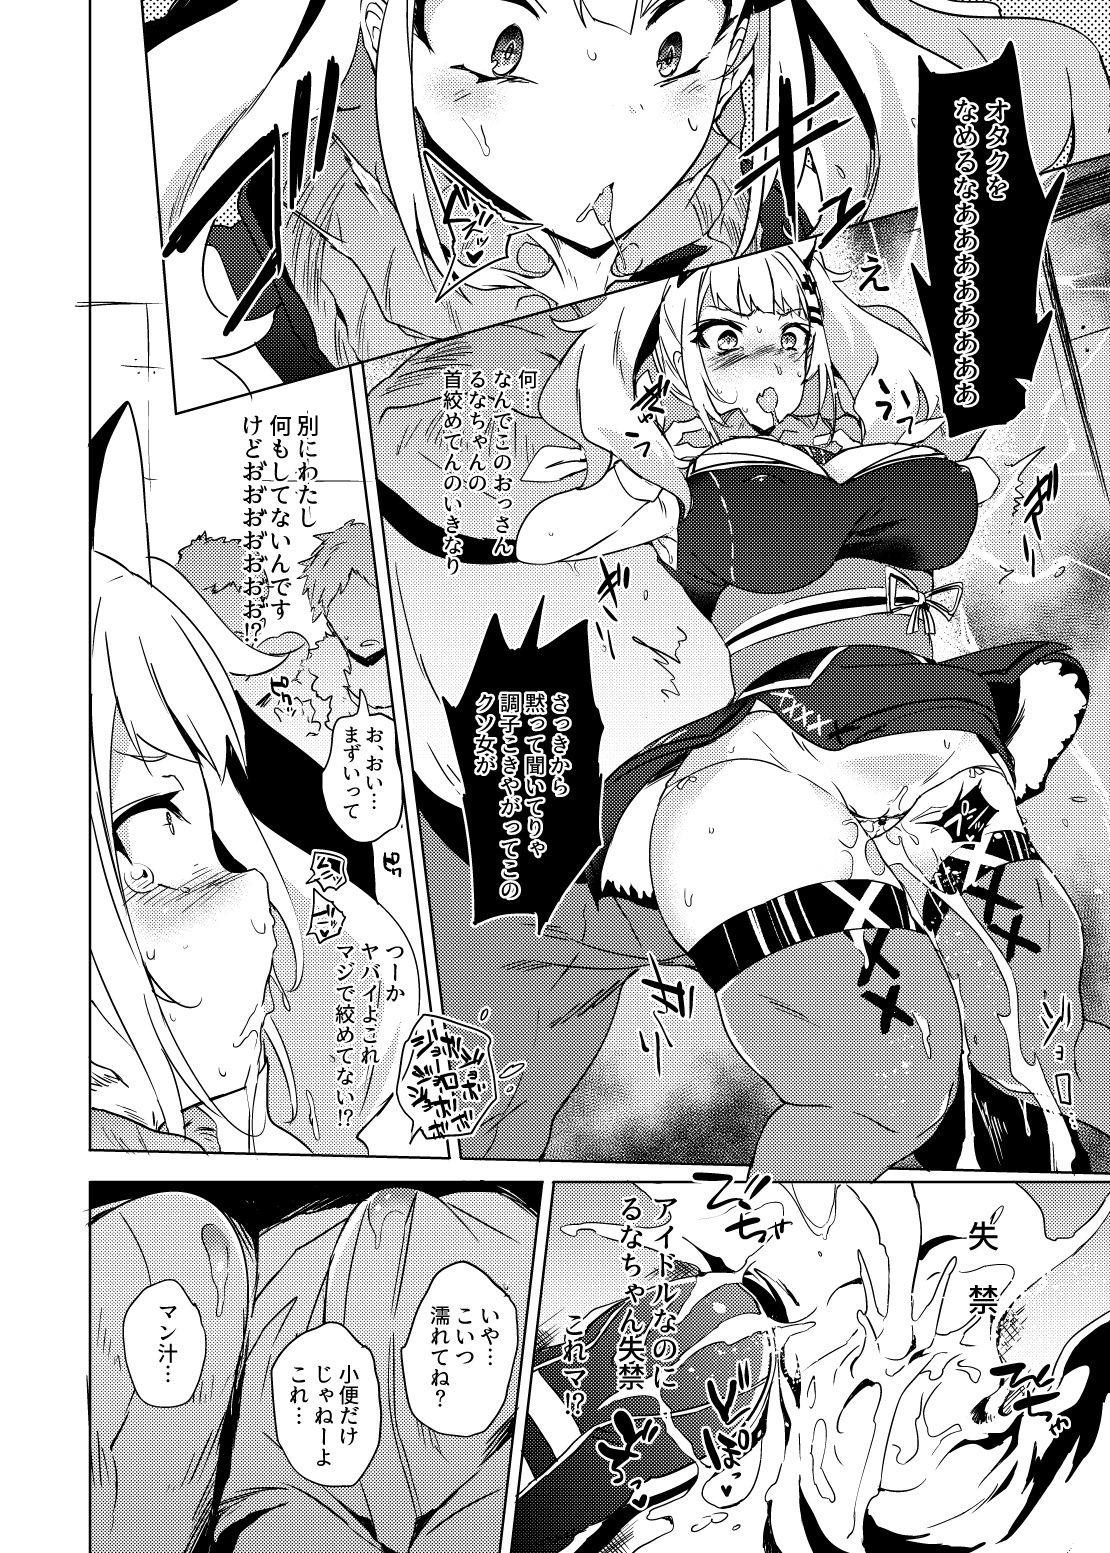 Fuyu Comi no Omake Manga 2